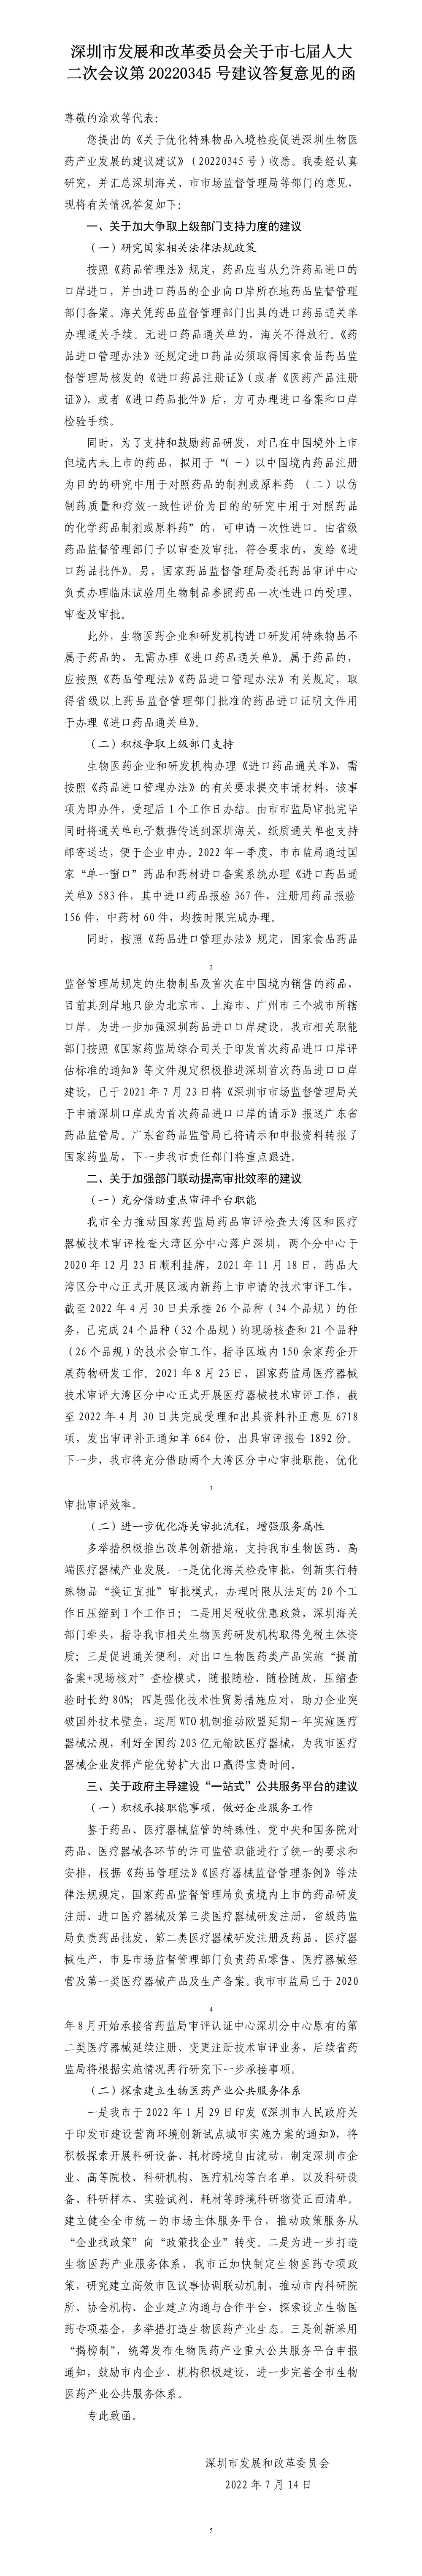 深圳市发展和改革委员会关于市七届人大二次会议第20220345号建议答复意见的函.jpg